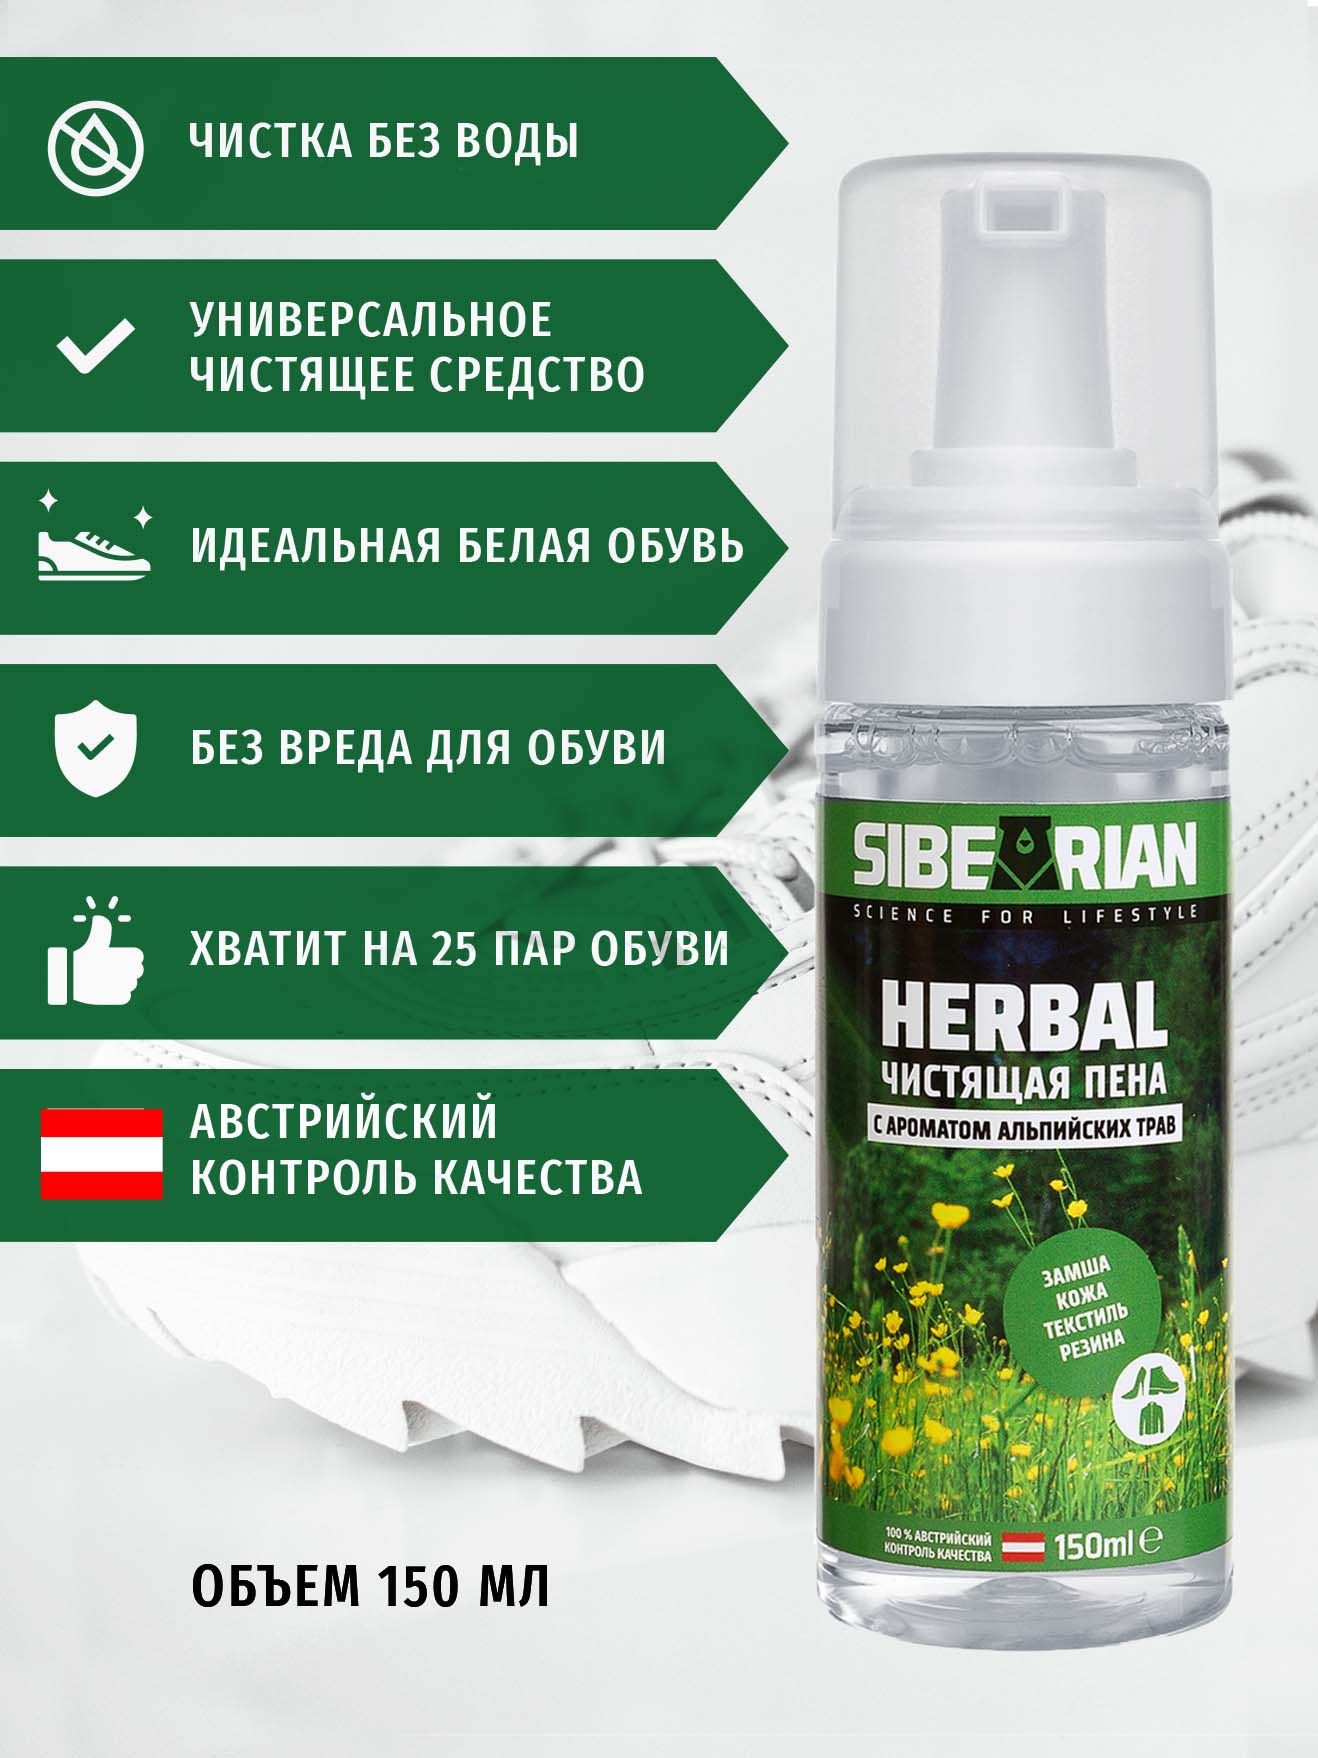 Пена для чистки Sibearian Herbal 150 мл